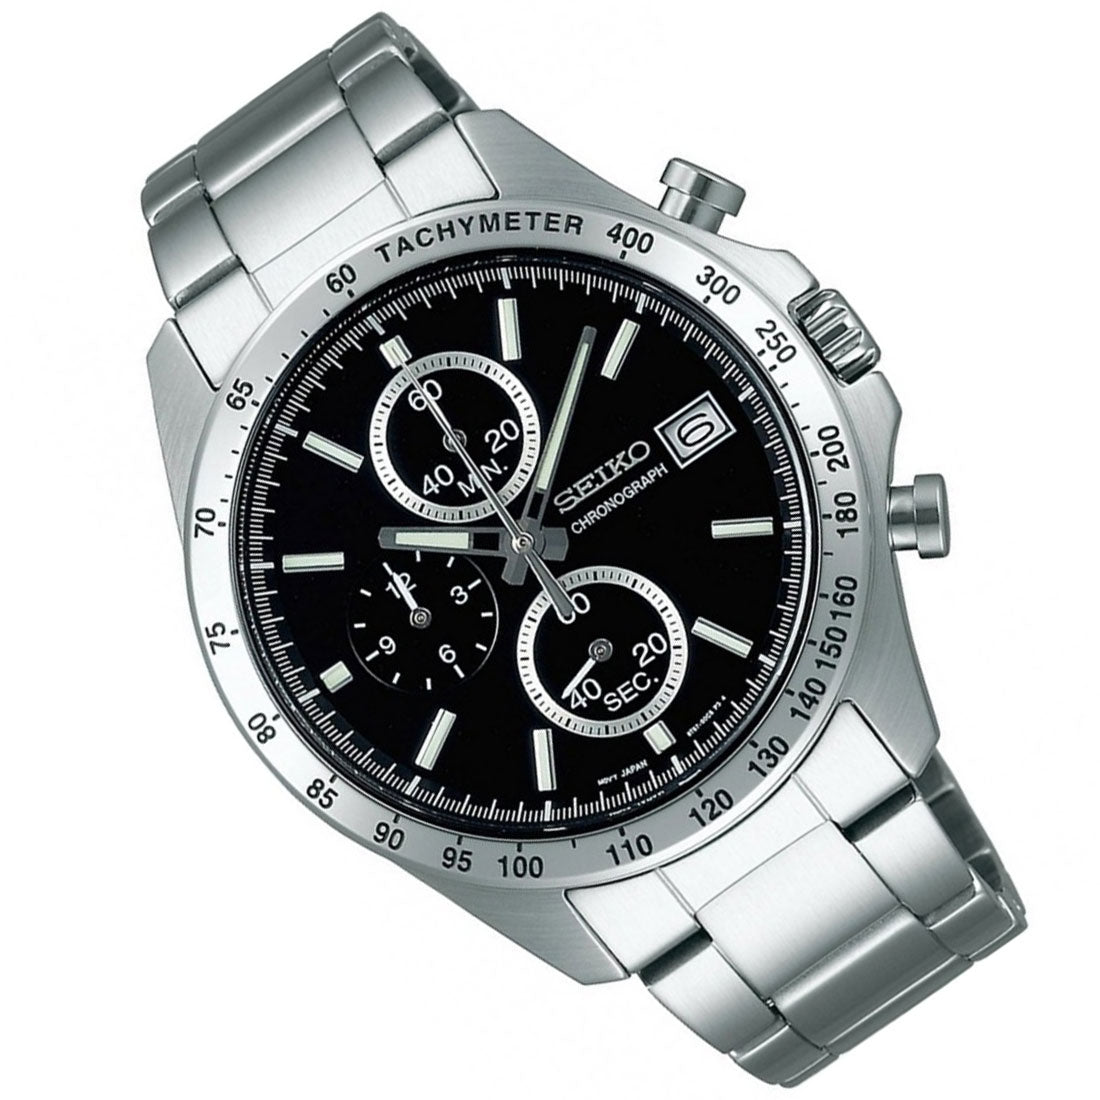 Seiko Spirit JDM Selection Chronograph SBTR005 Black Dial Quartz Stainless Steel Watch -Seiko